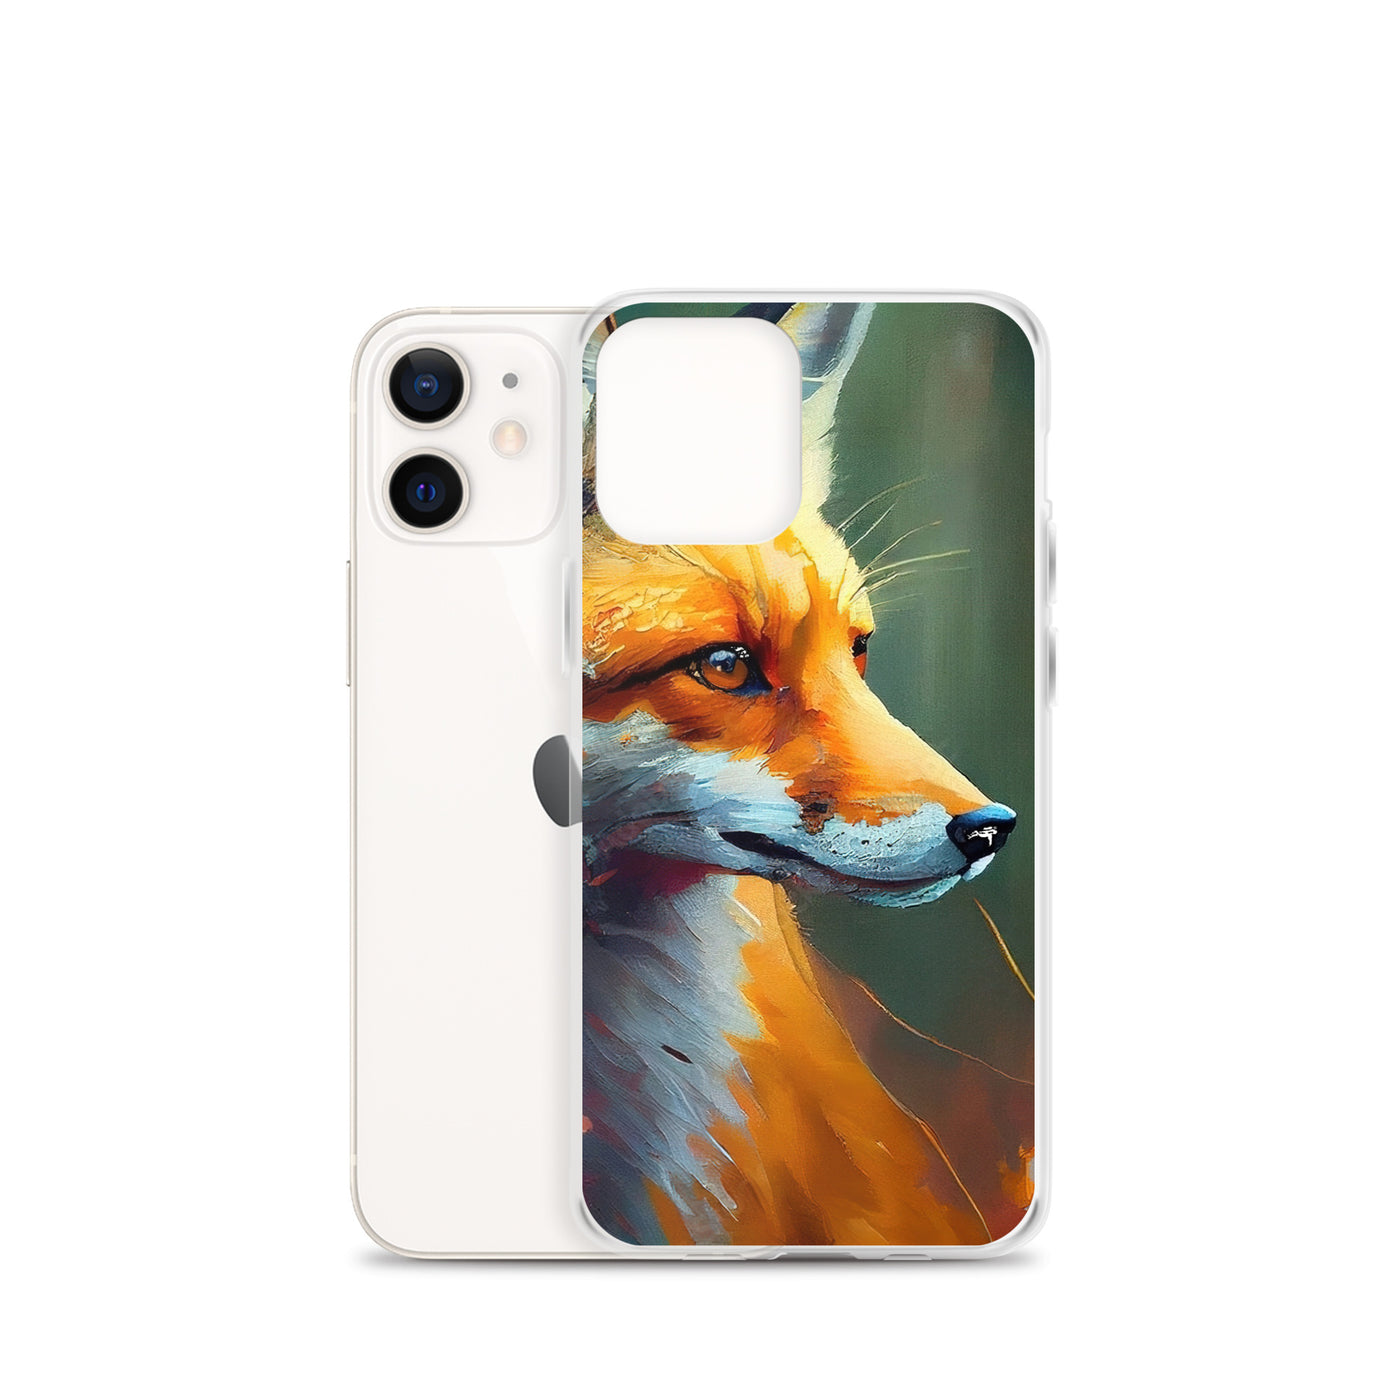 Fuchs - Ölmalerei - Schönes Kunstwerk - iPhone Schutzhülle (durchsichtig) camping xxx